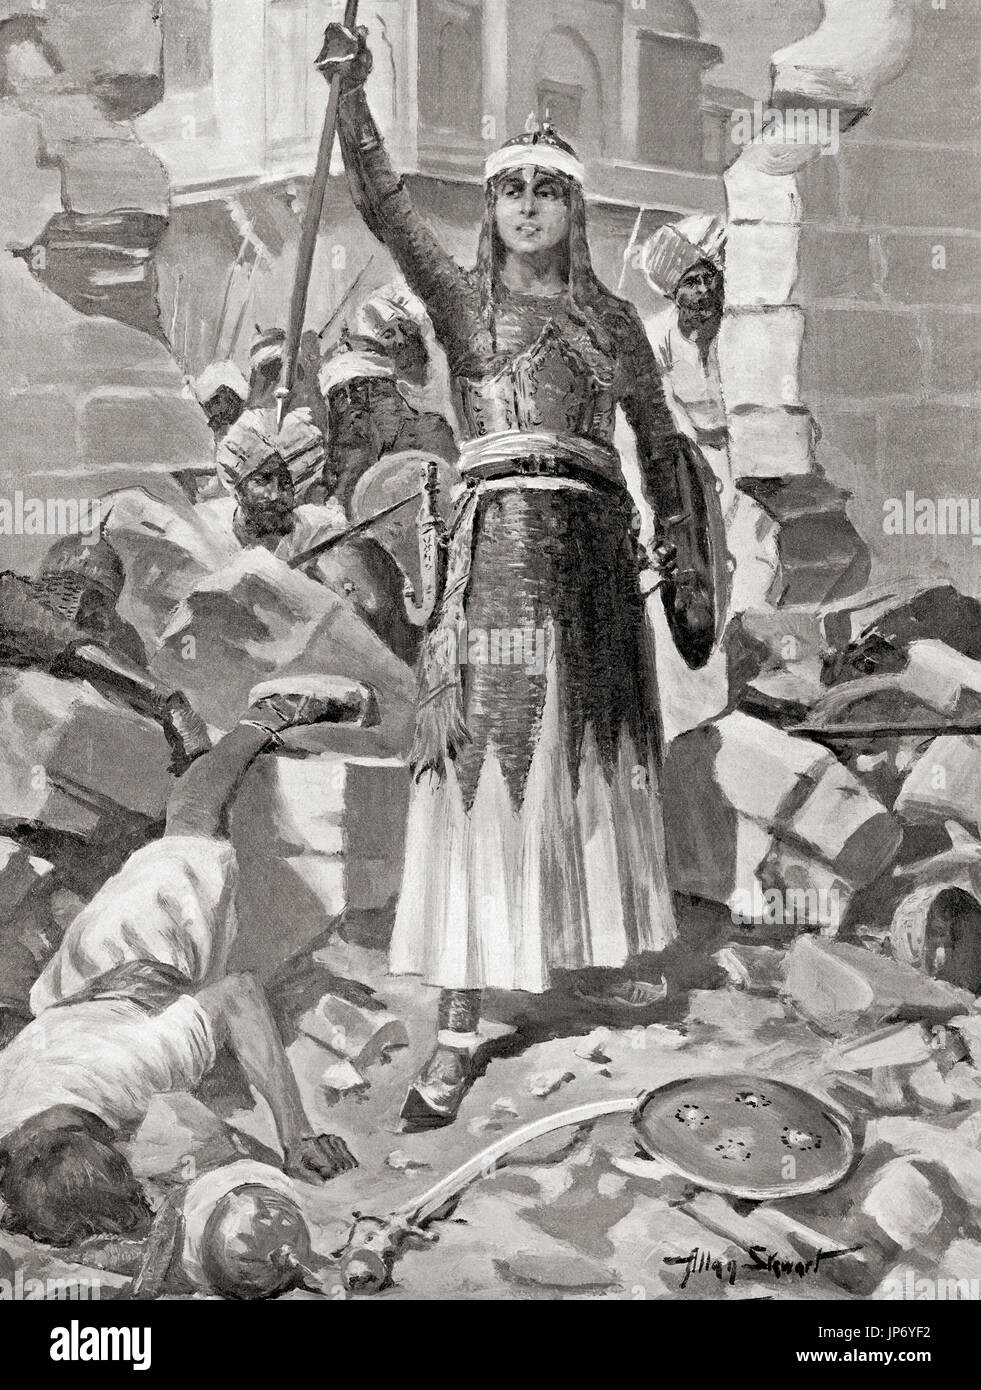 Prinzessin Chand Bibi verteidigt erfolgreich die Ahmadnagar Festung gegen die Mughal Kaiser Akbar 1595.  Chand Bibi, 1550 – 1599.  Indischer Muslim Regent und Krieger.  Nach dem Gemälde von Allan Stewart, (1865-1951).  Hutchinson Geschichte der Nationen veröffentlichte 1915. Stockfoto